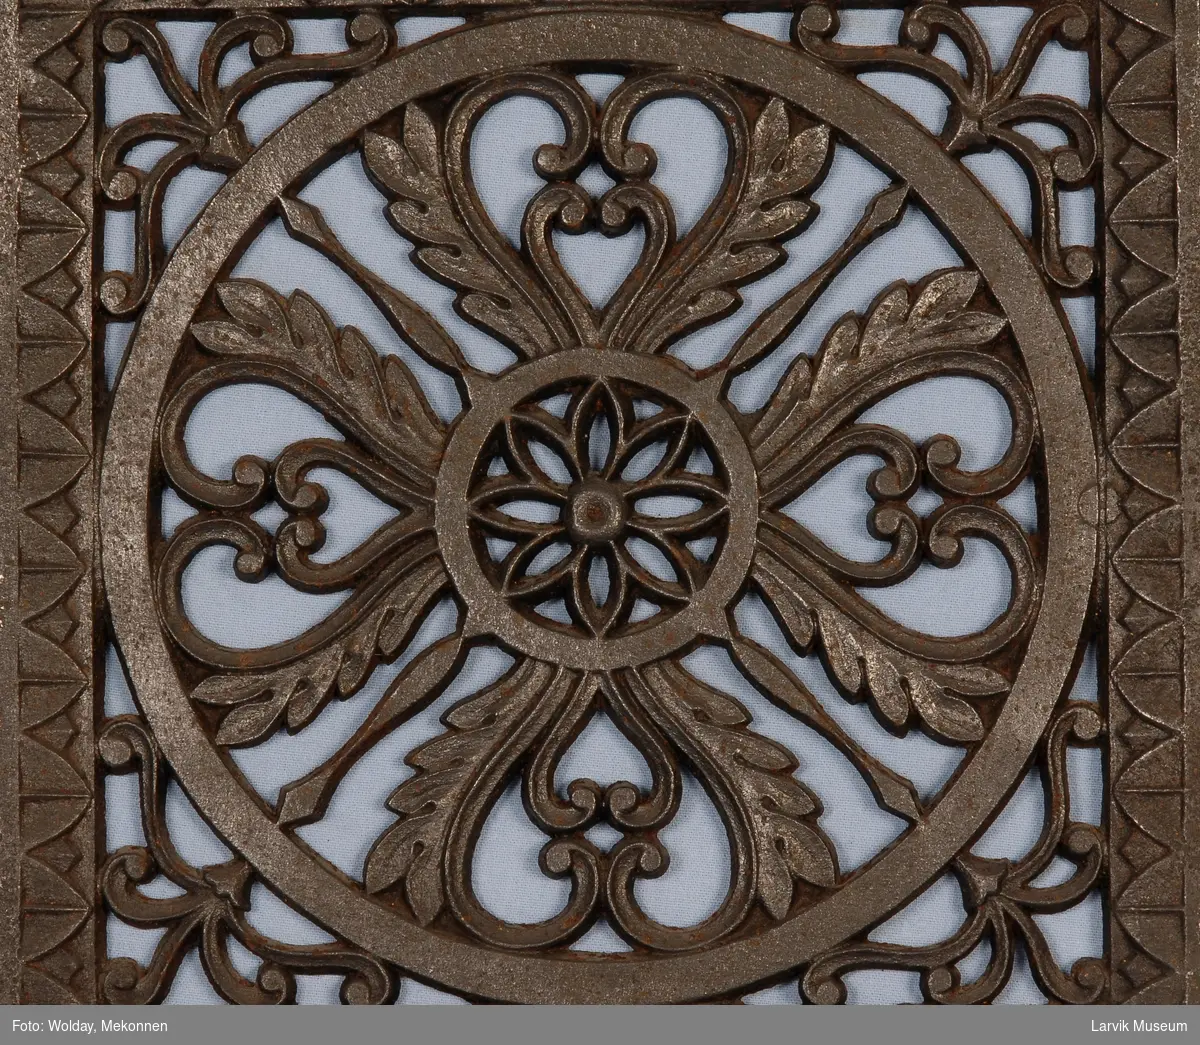 Symetrisk gjennombrudt blomster-ornamentikk i en sirkel, ornamentikk i hjørnene avsluttes med en bord-ramme